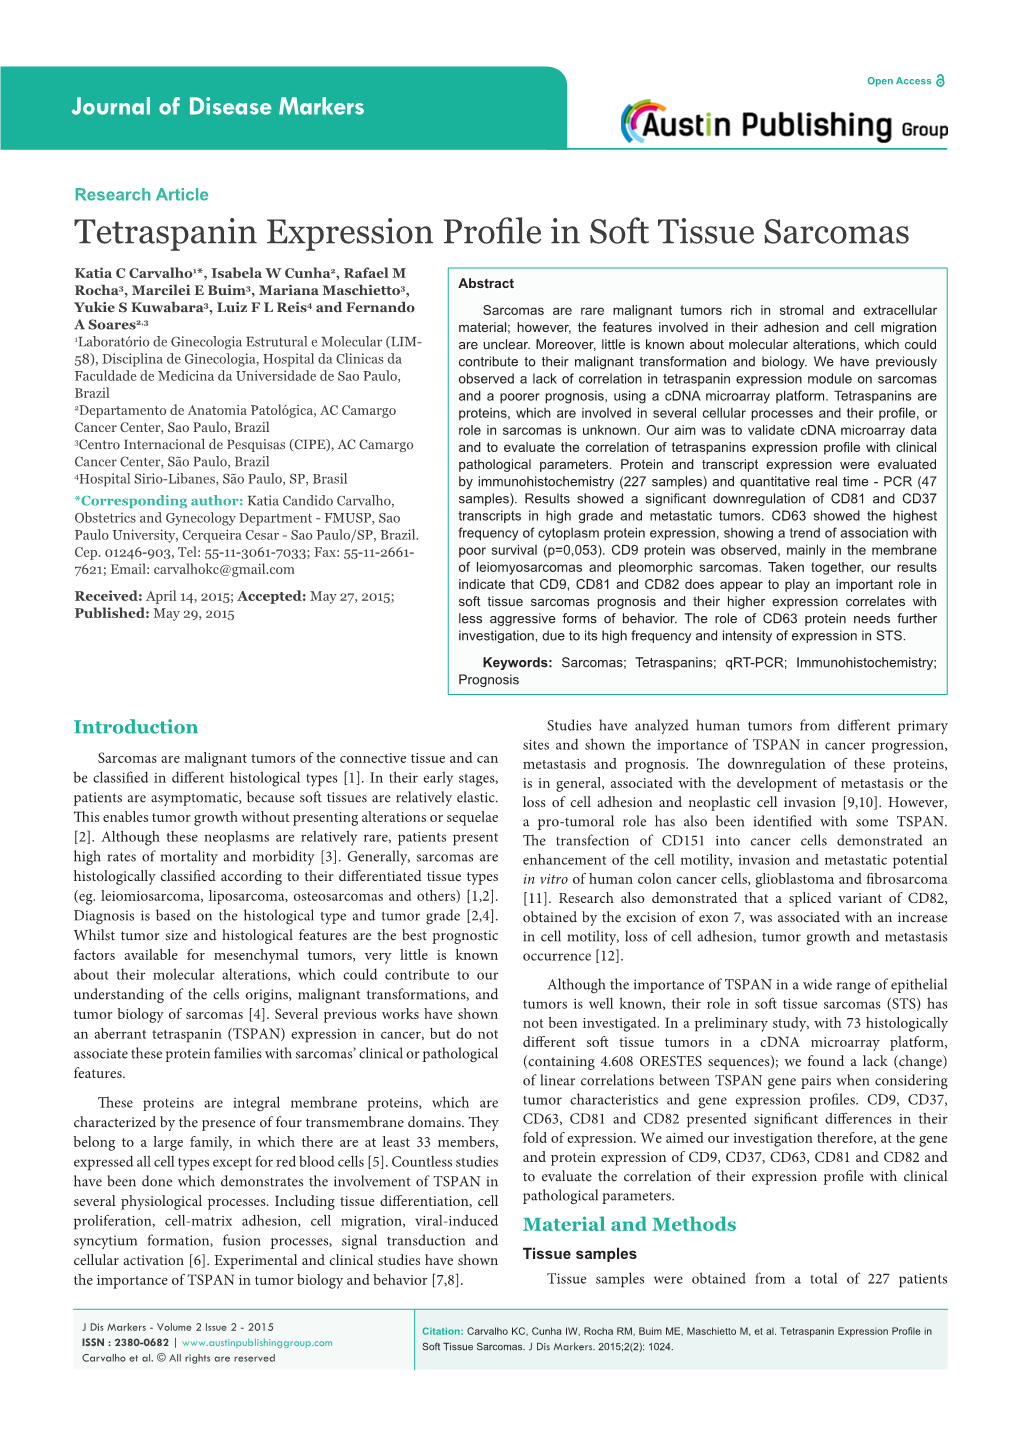 Tetraspanin Expression Profile in Soft Tissue Sarcomas